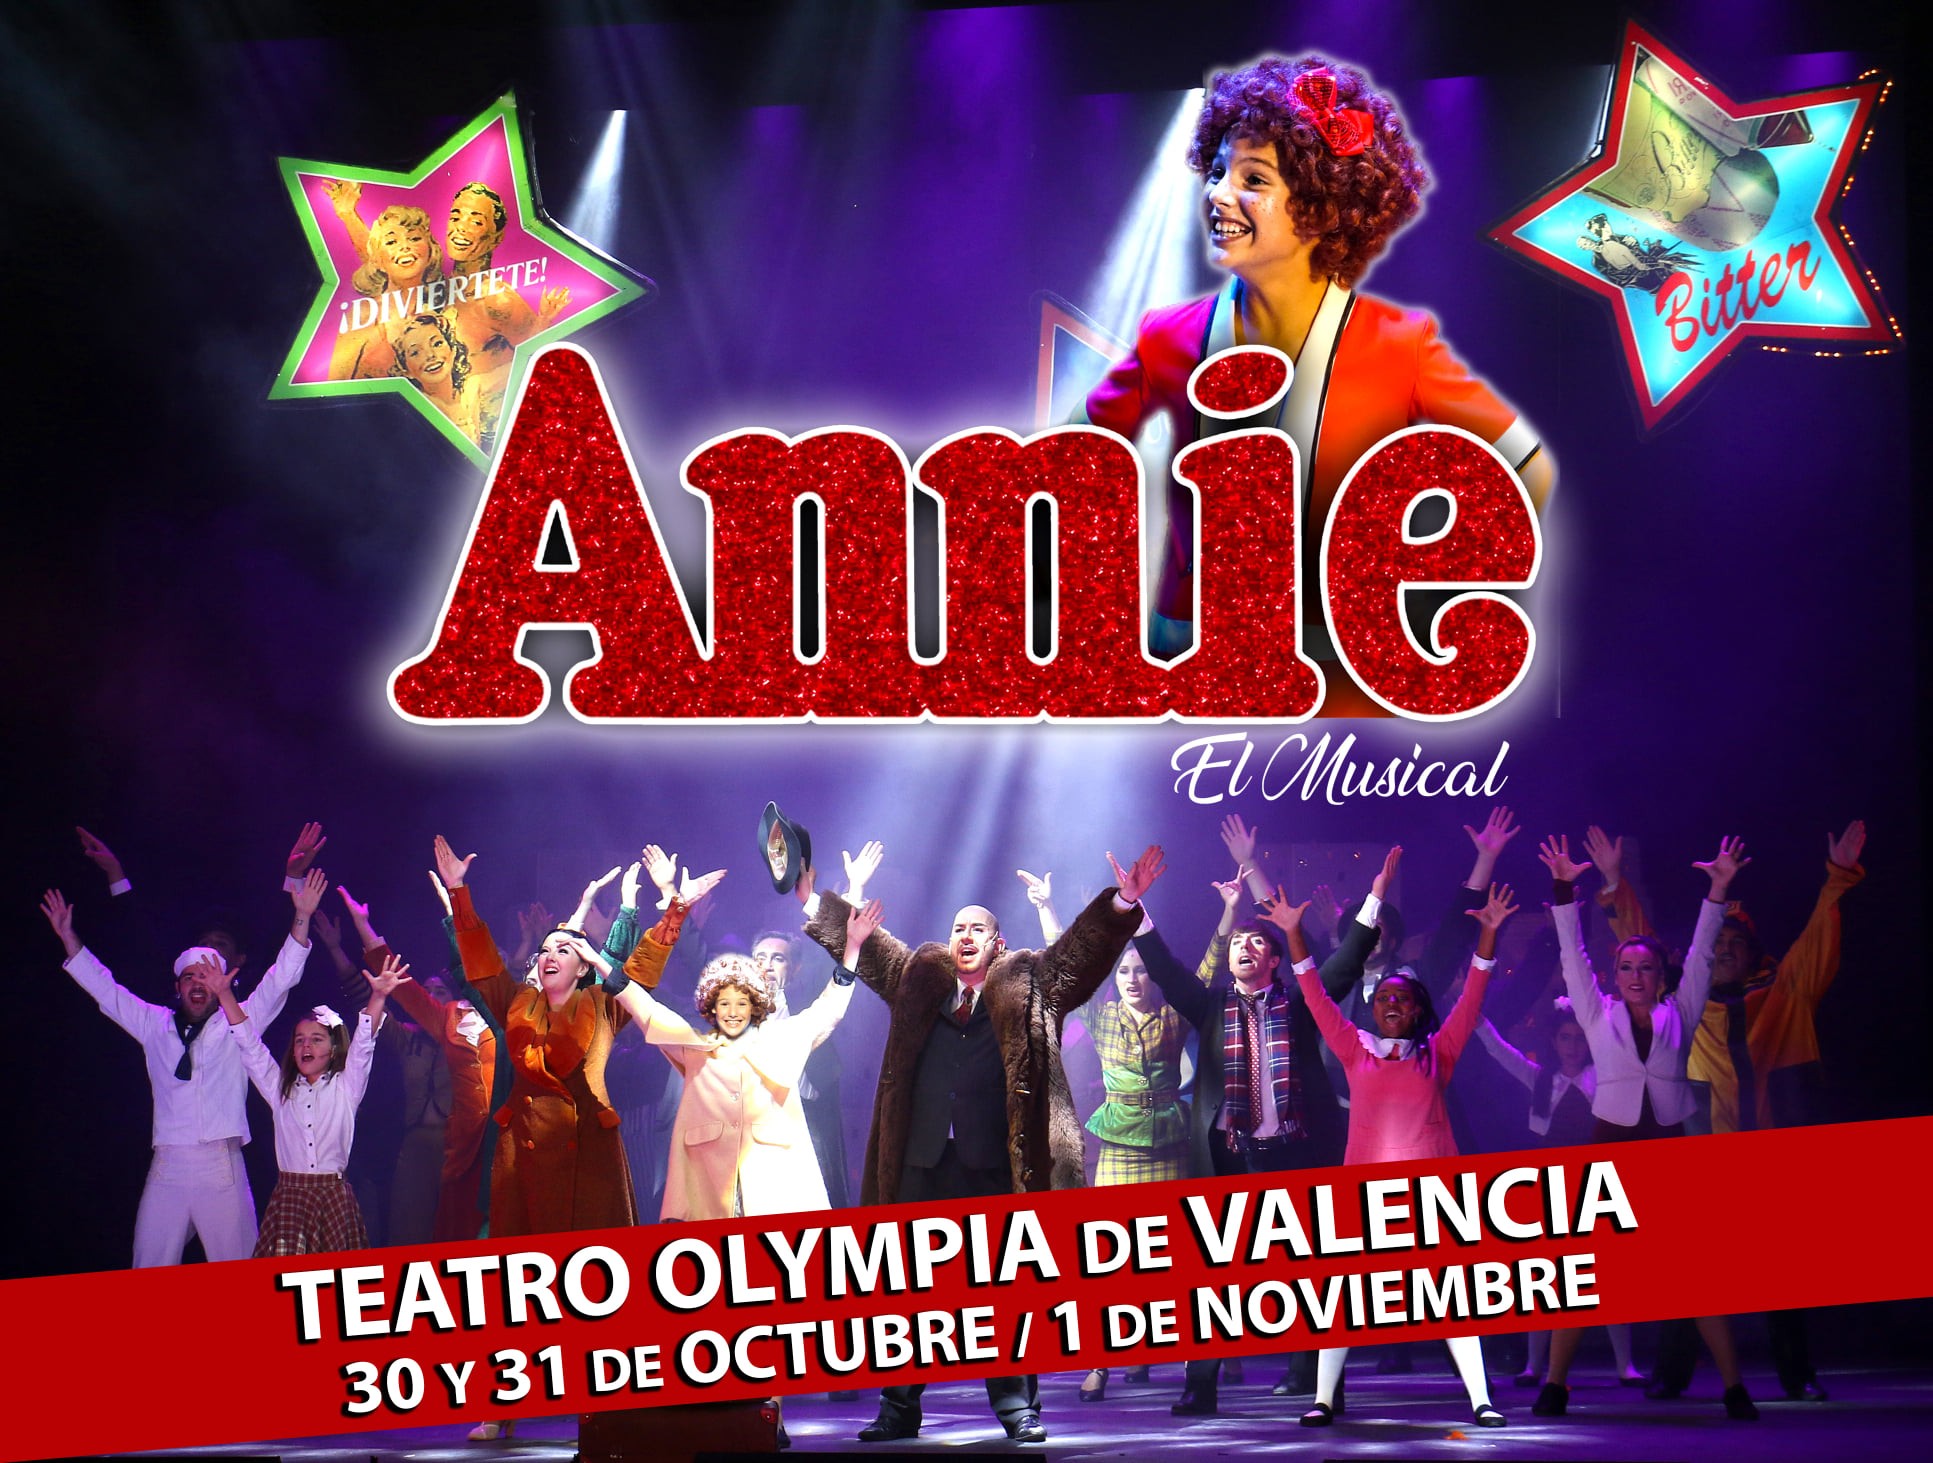 Danubio estómago Punto de referencia Annie El Musical” – Teatro Olympia – Valencia Teatros